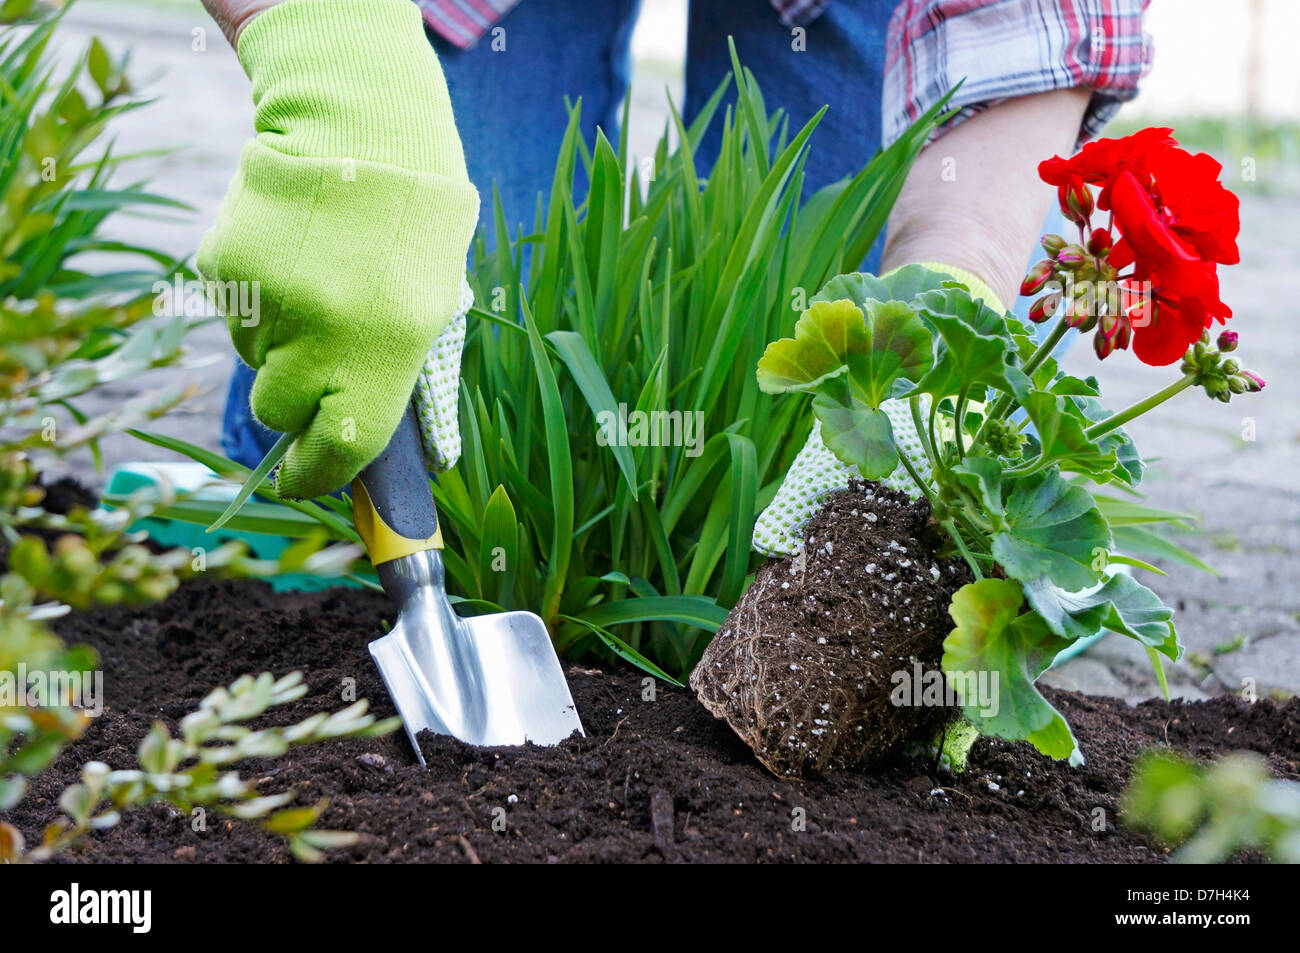 Jardiner, planter des fleurs, géranium rouge Banque D'Images